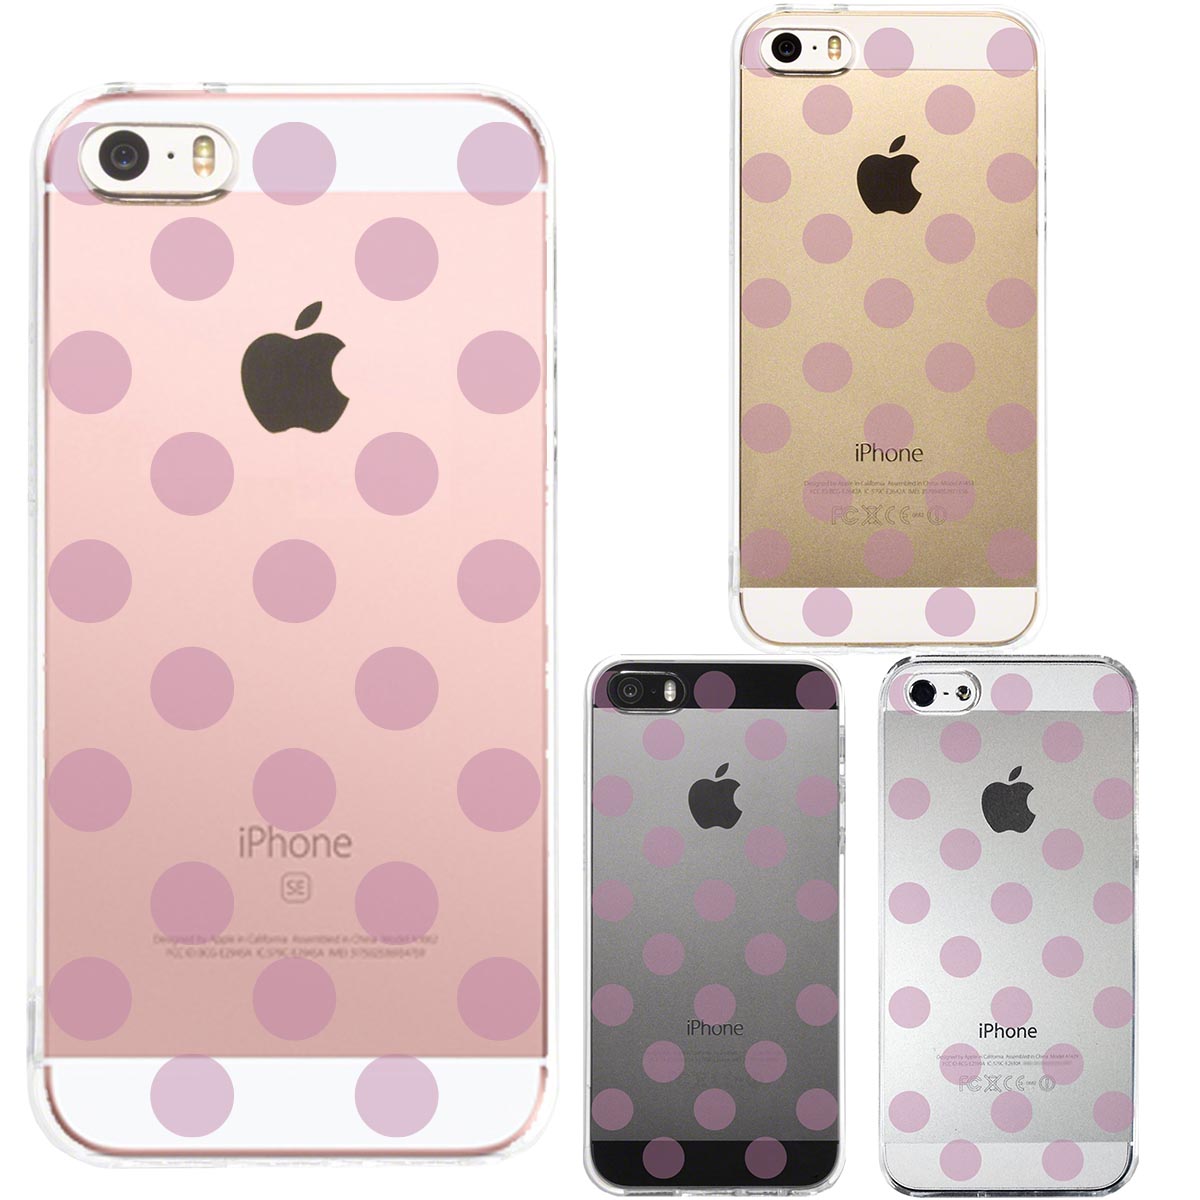 iPhone SE 5S/5 対応 アイフォン ハード クリア ケース カバー シェル ジャケット 水玉 パープルピンク